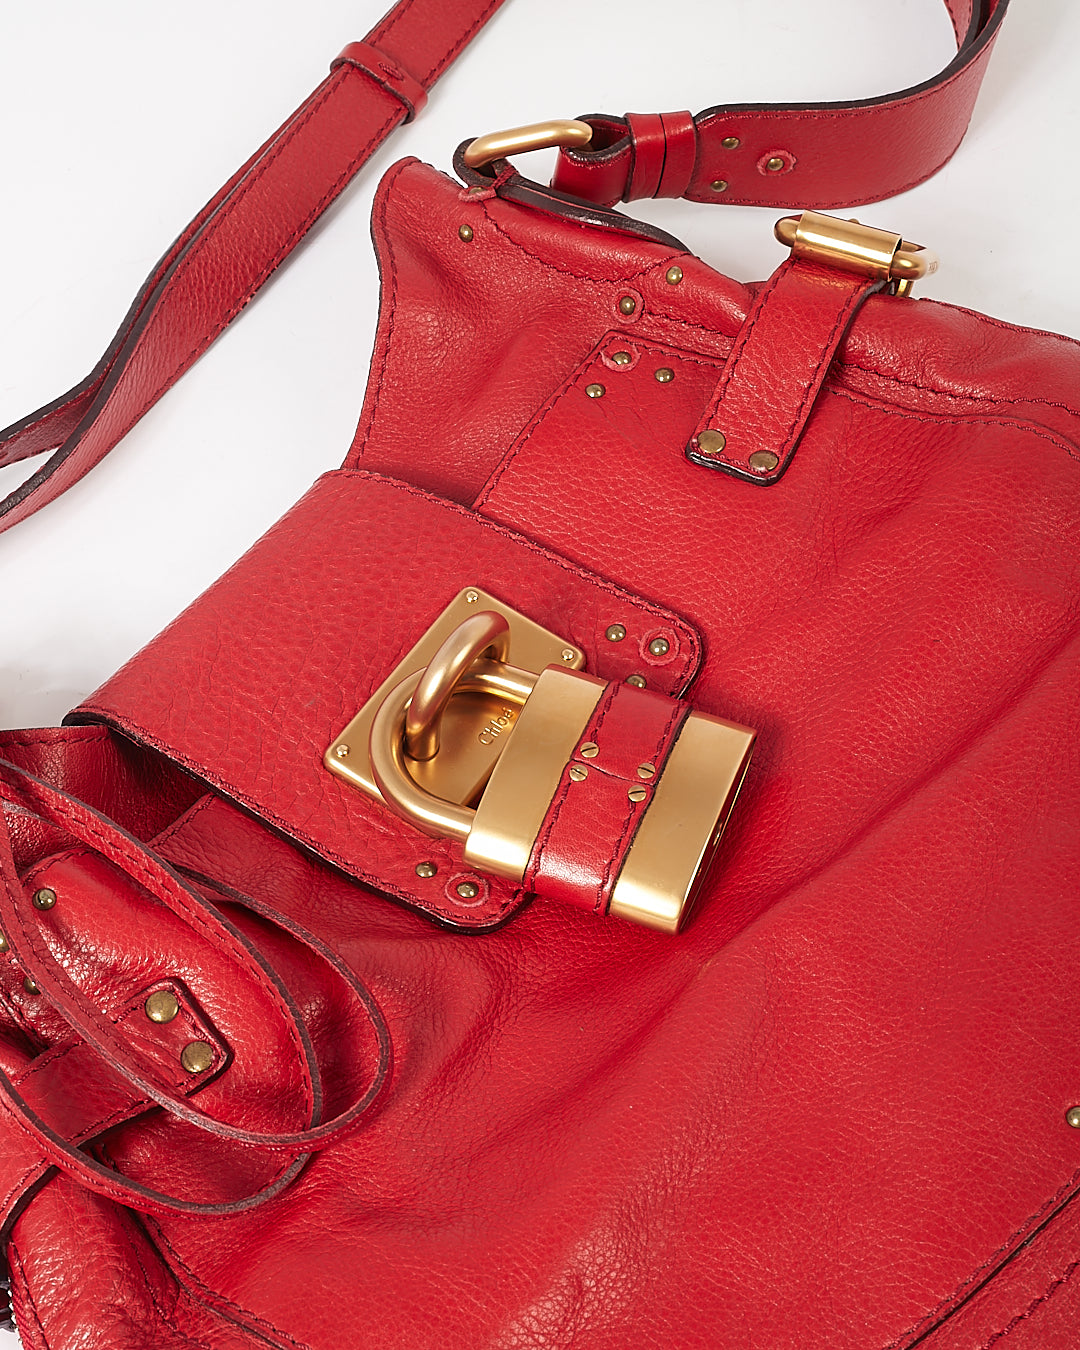 Chloe Red Leather Paddington Hobo Shoulder Bag